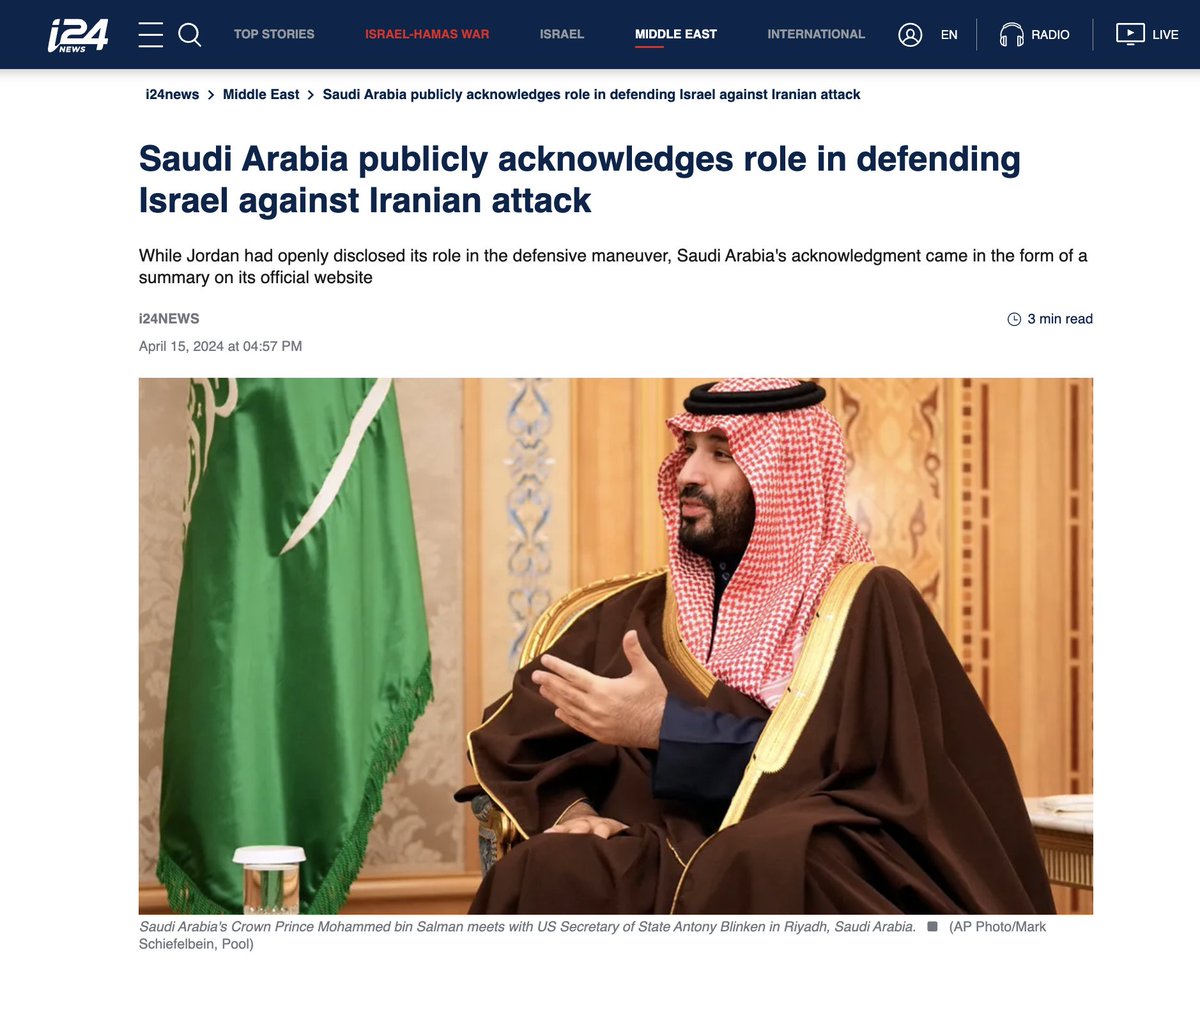 قناة i24news الإسرائيلية: تم التأكيد من خلال مصادر داخل العائلة المالكة في السعودية أن المملكة شاركت في عملية اعتراض الهجوم الإيراني الأخير على إسرائيل، ووصفت هذه الخطوة بأنها مساهمة في حماية الاستقرار الإقليمي للمنطقة.